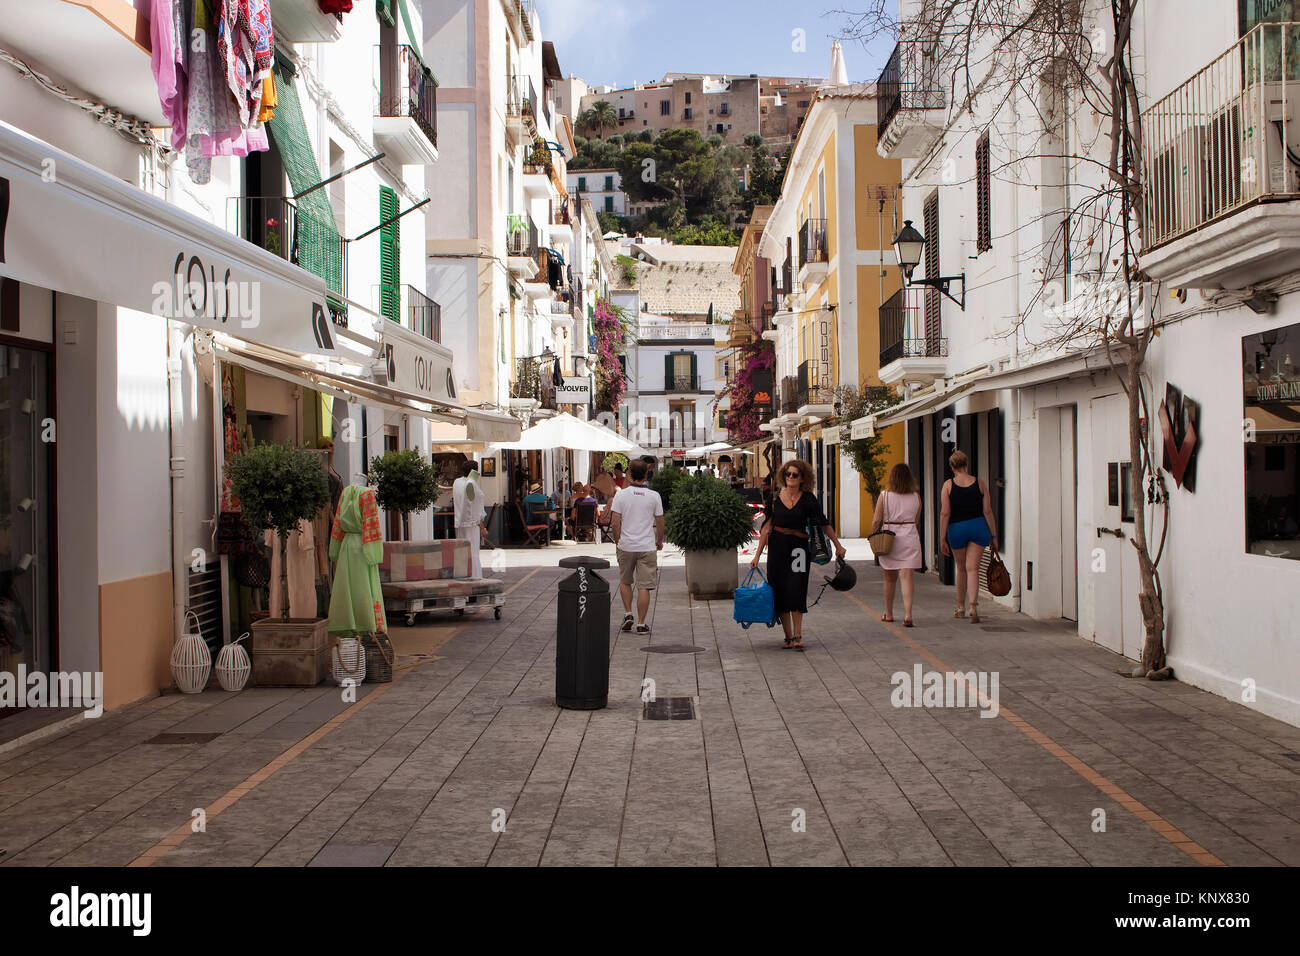 Anzeigen von Menschen zu Fuß auf einem der schmalen, historischen Einkaufsstraßen in der Altstadt von Ibiza-Stadt entfernt. Bild spiegelt Kultur und Lebensstil der Insel. Stockfoto